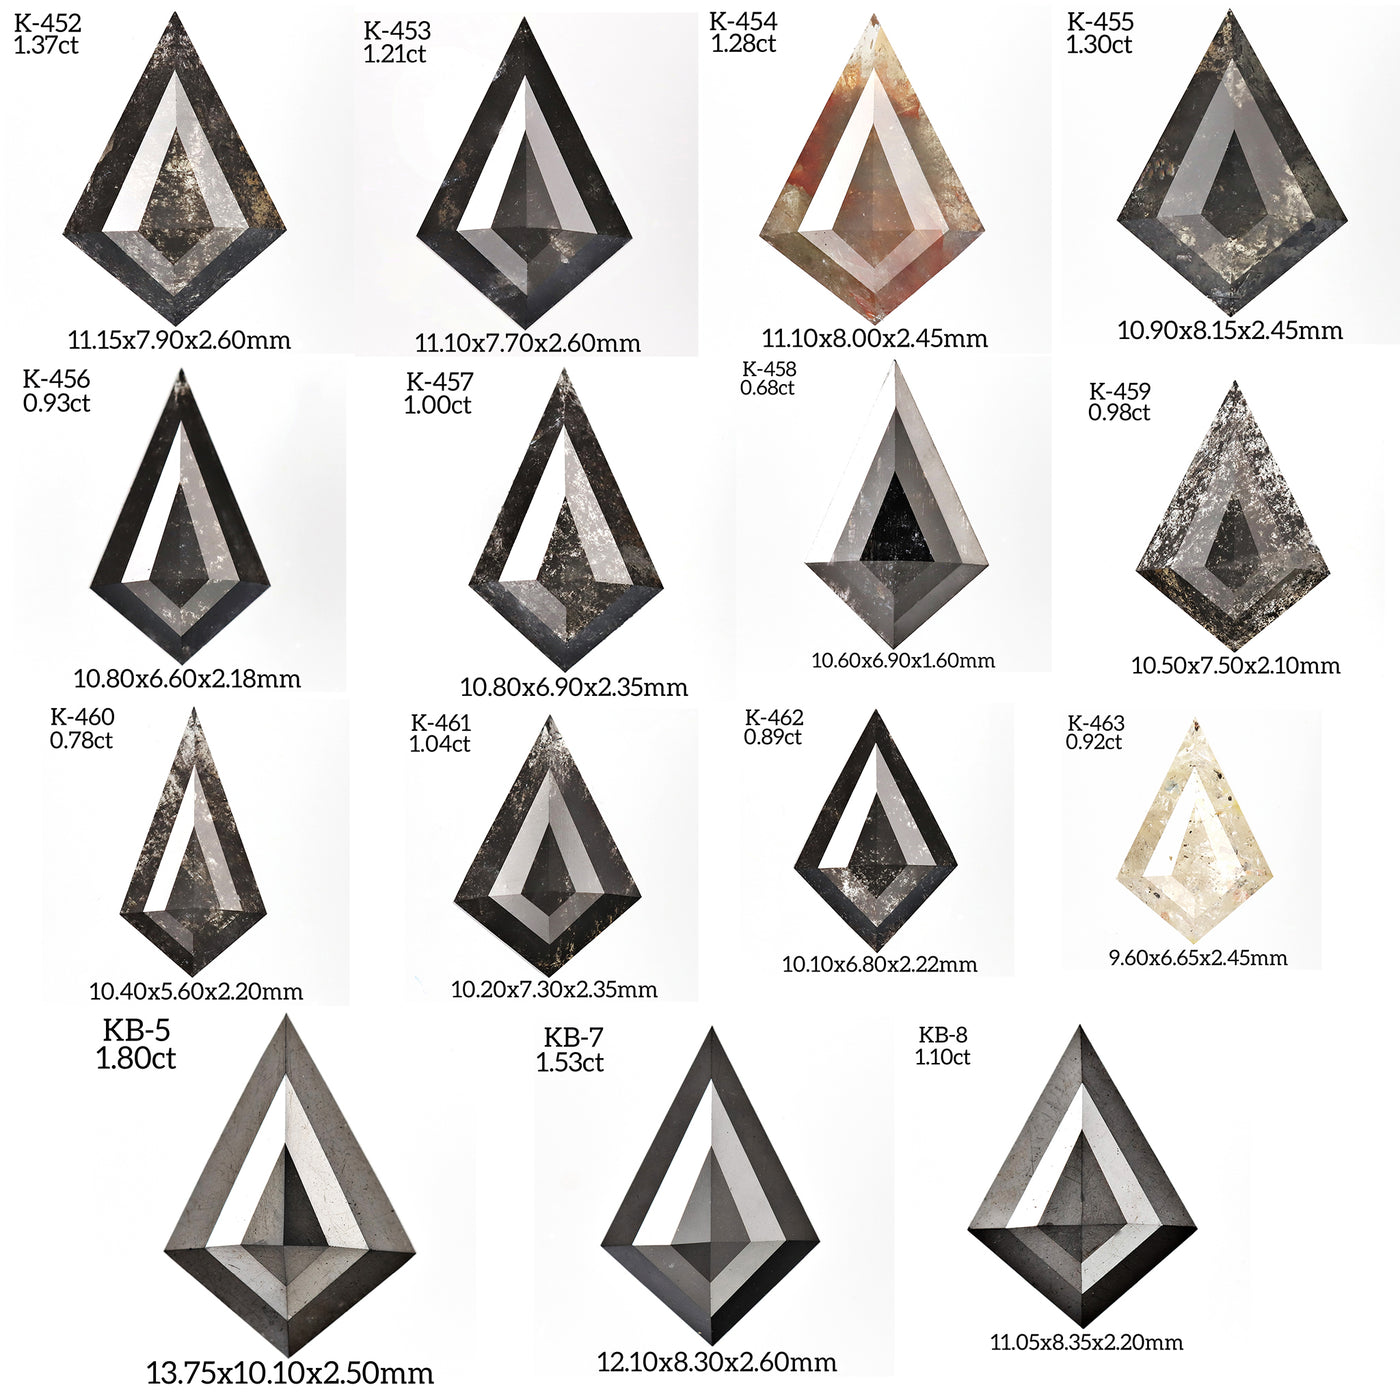 K452 - Salt and pepper kite diamond